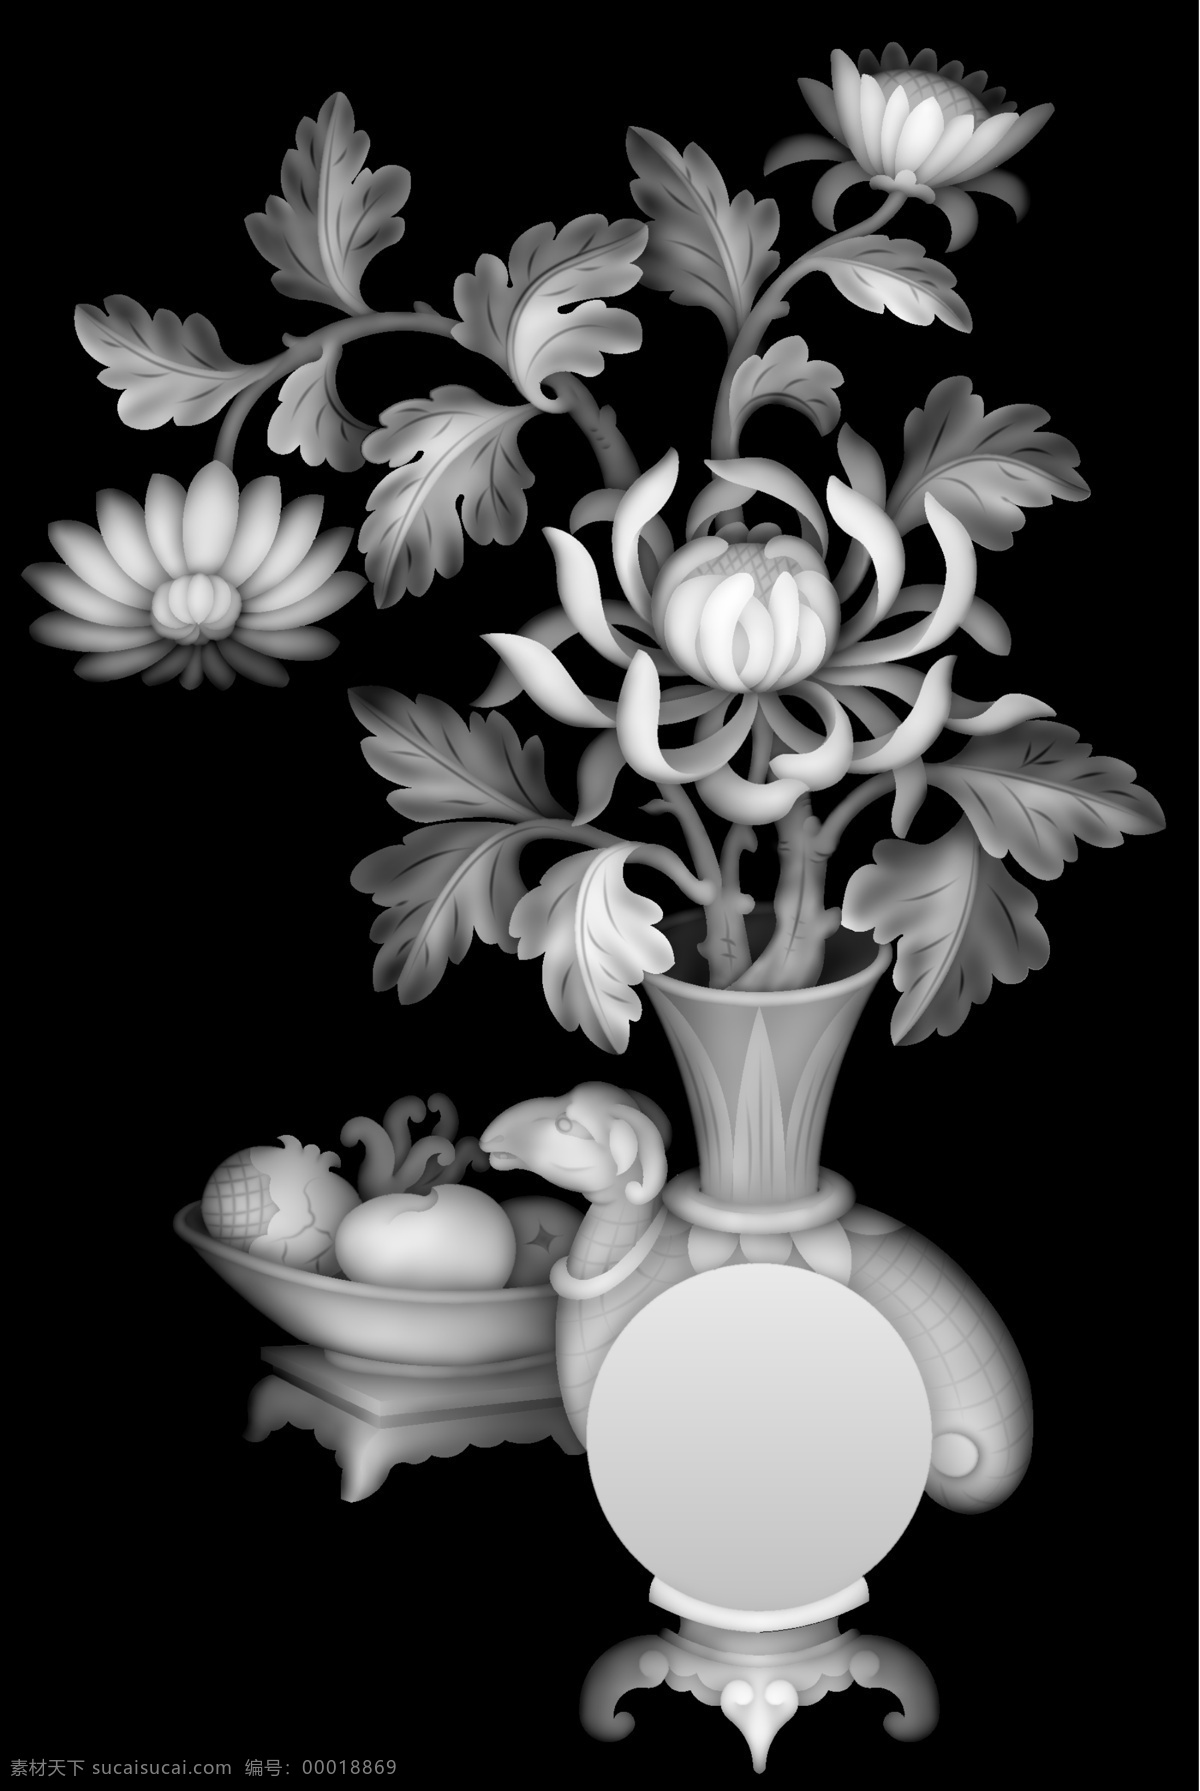 牡丹花 花瓶 灰度图 精明图 古典 文化艺术 bmp